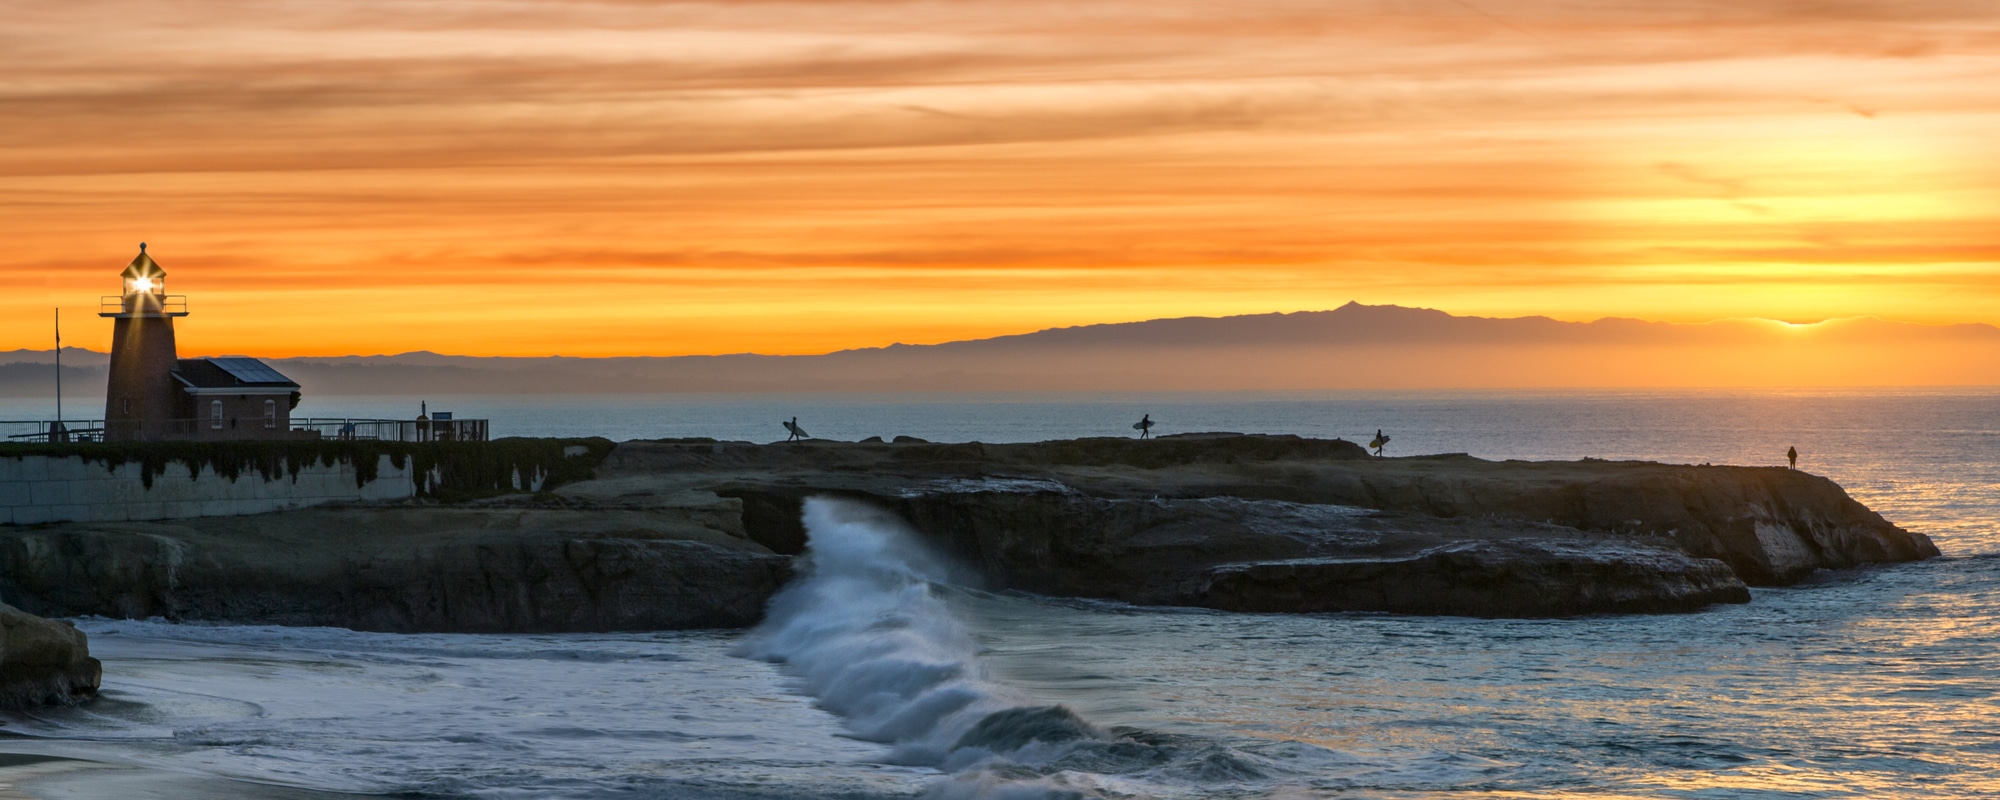 Santa Cruz coast at sunset